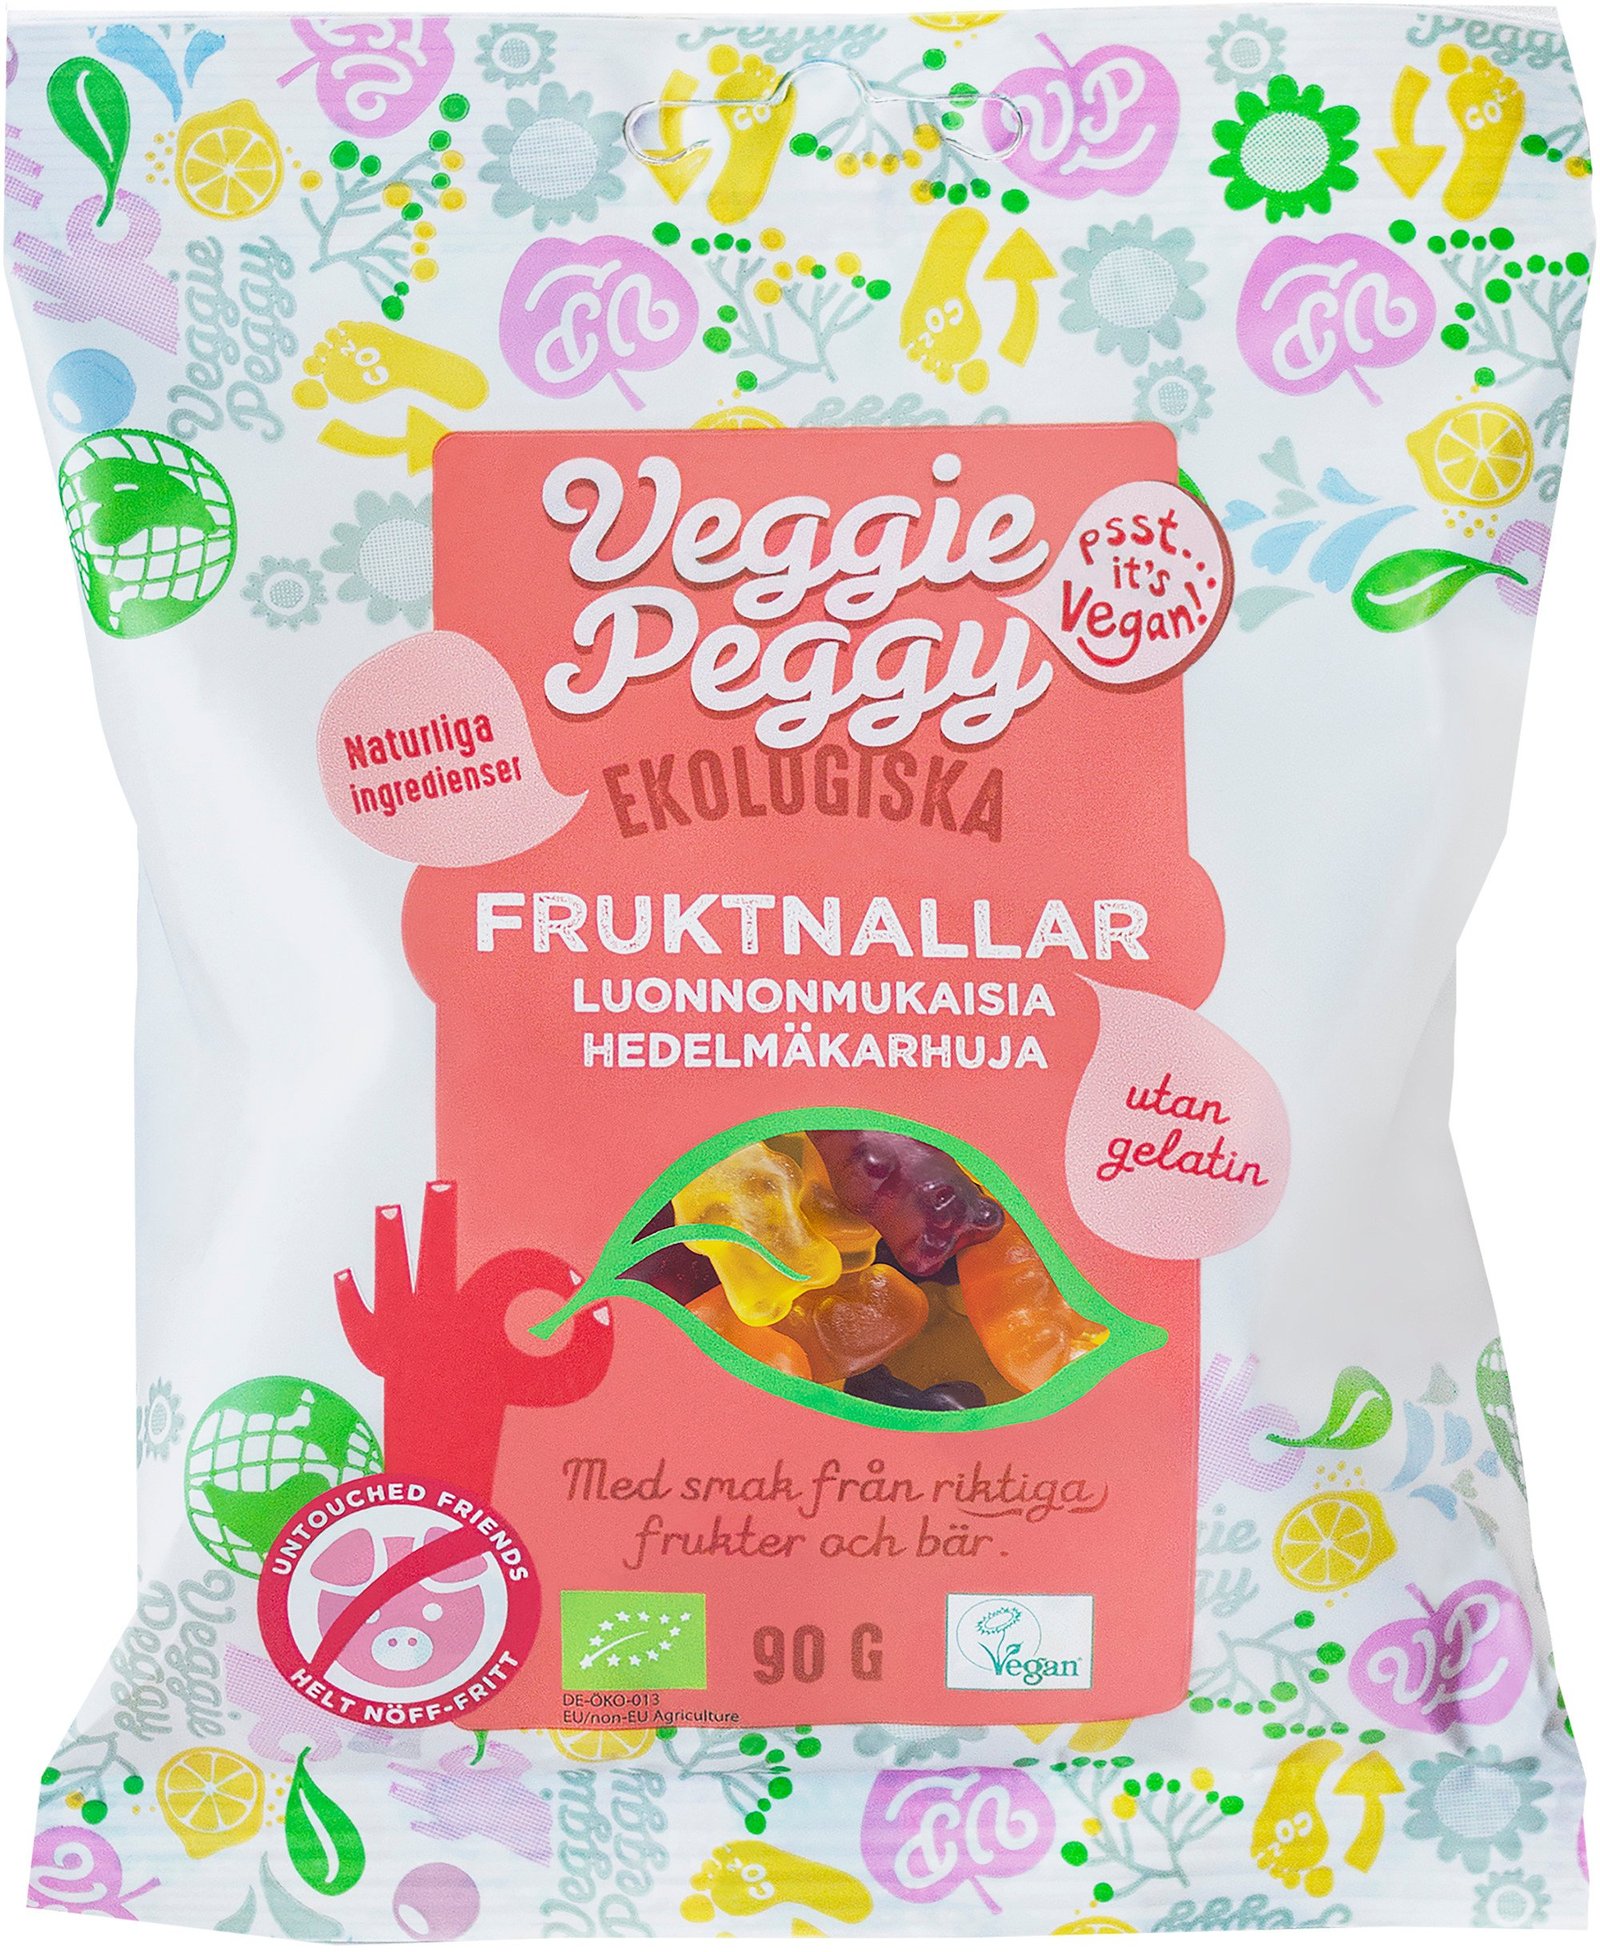 Veggie Peggy Fruktnallar 90 g